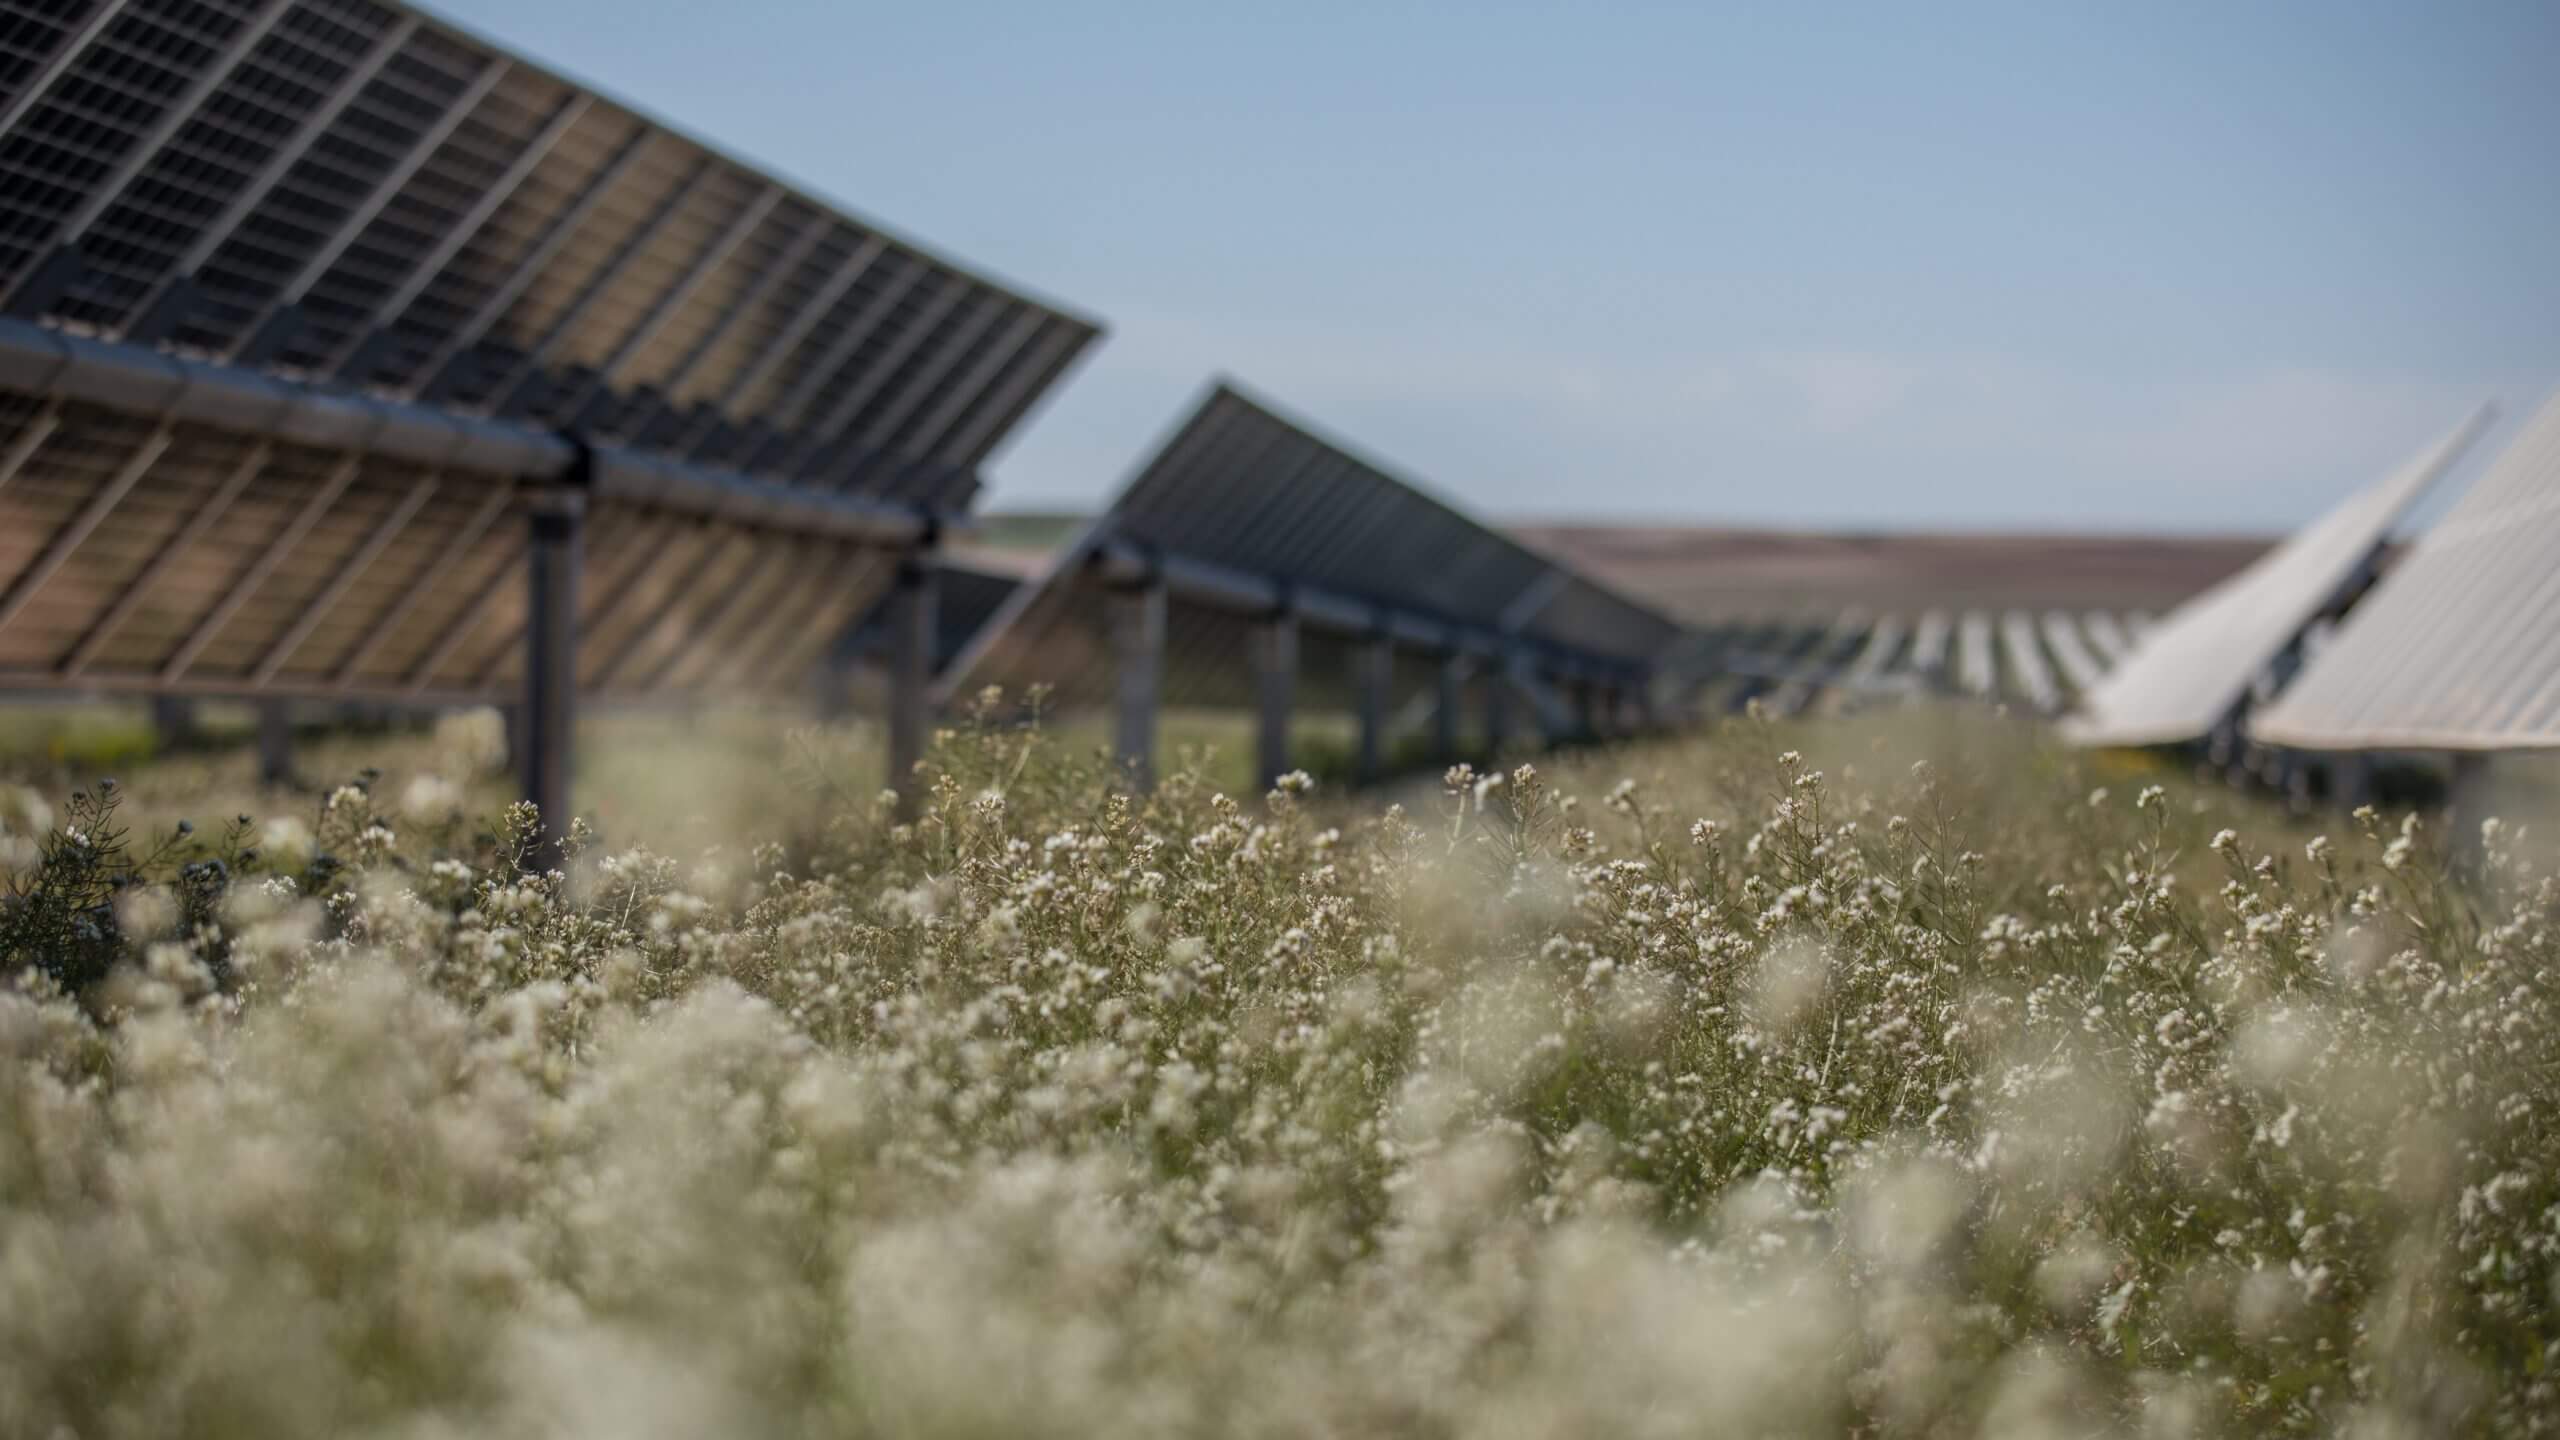 rows of solar panels on a solar farm